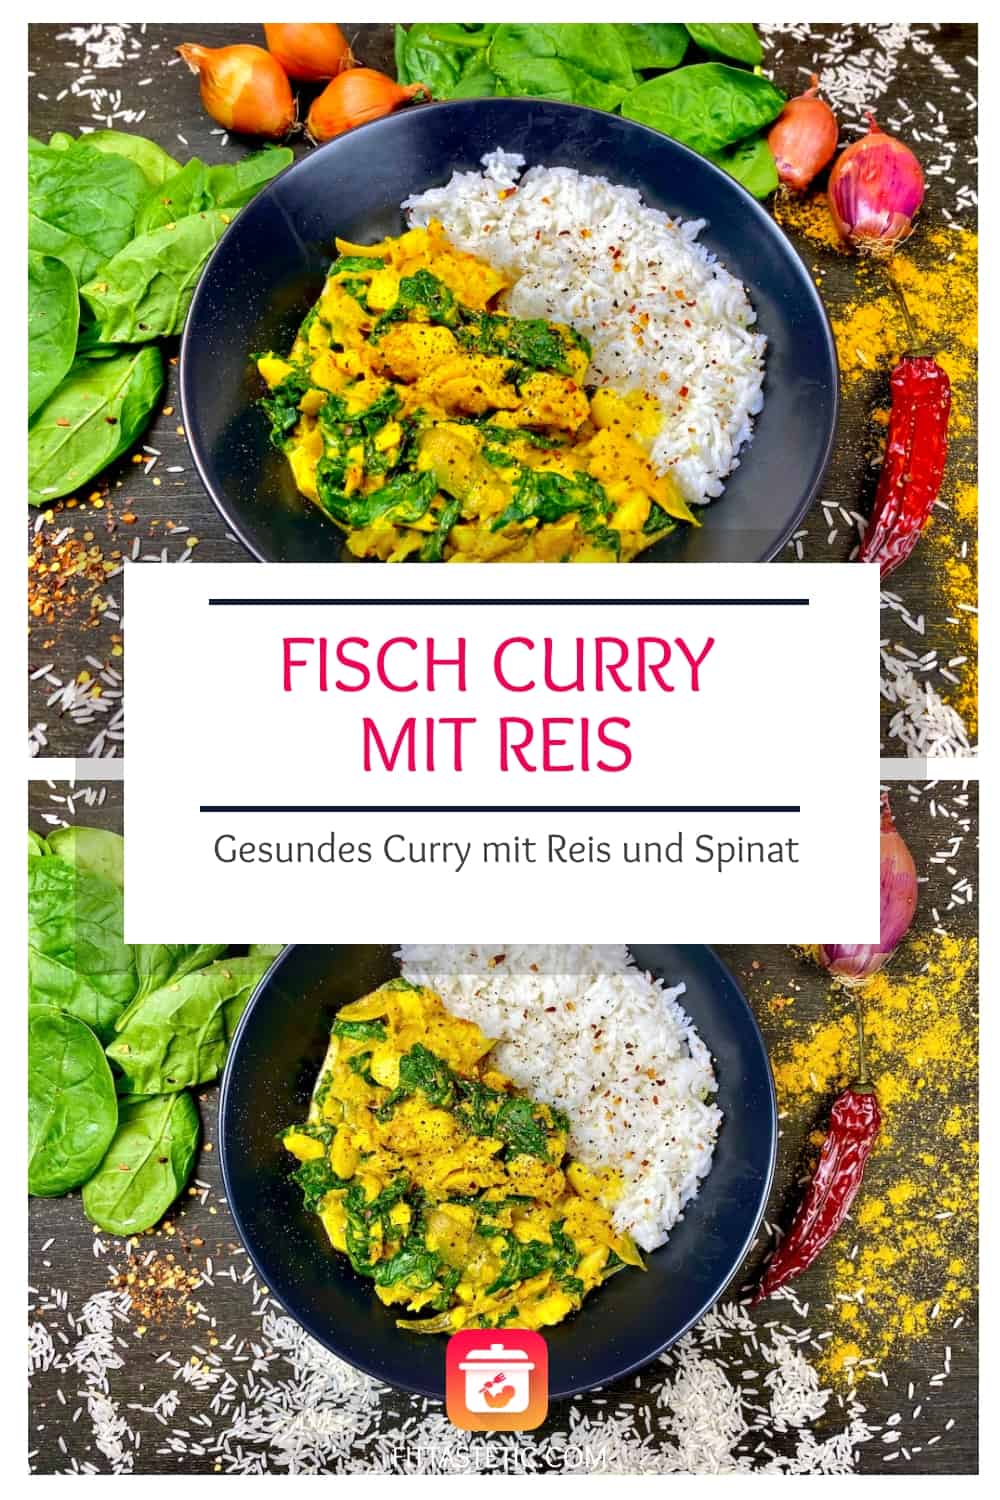 Fisch Curry mit Reis - Gesundes Curry mit Reis und Spinat